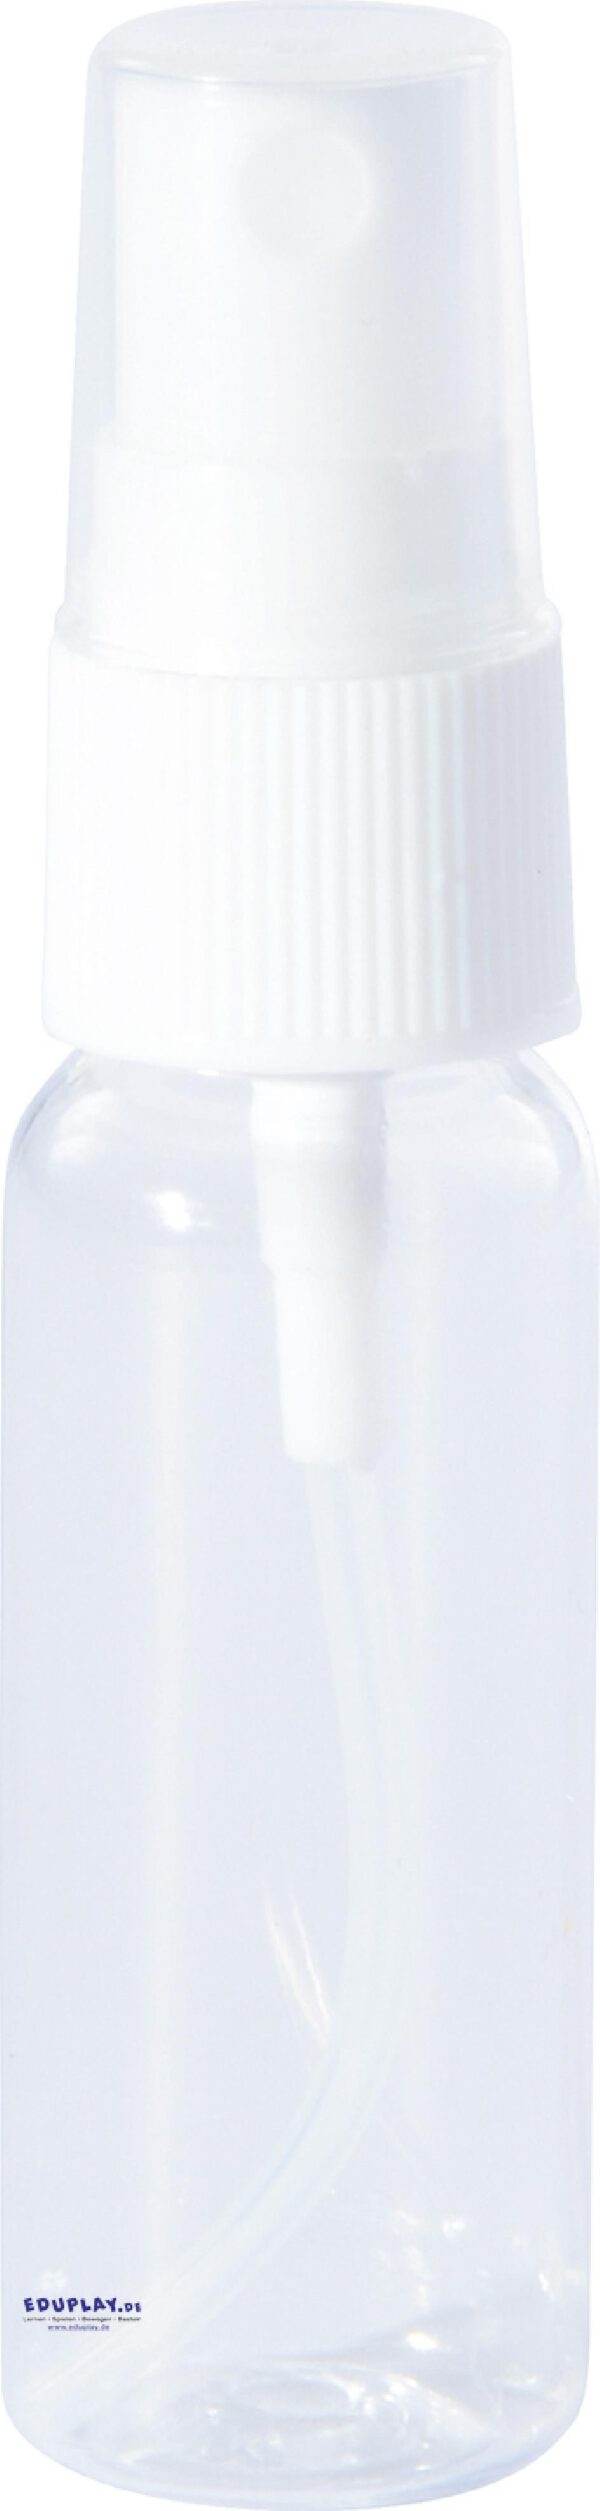 Sprühflasche 20 ml Flüssigkeiten fein vernebeln Mit dem Pumpzerstäuber können bis zu 20 ml wässrige, ölige, farbige, salzhaltige, duftende Flüssigkeit als feiner Sprühnebel ausgegeben werden.